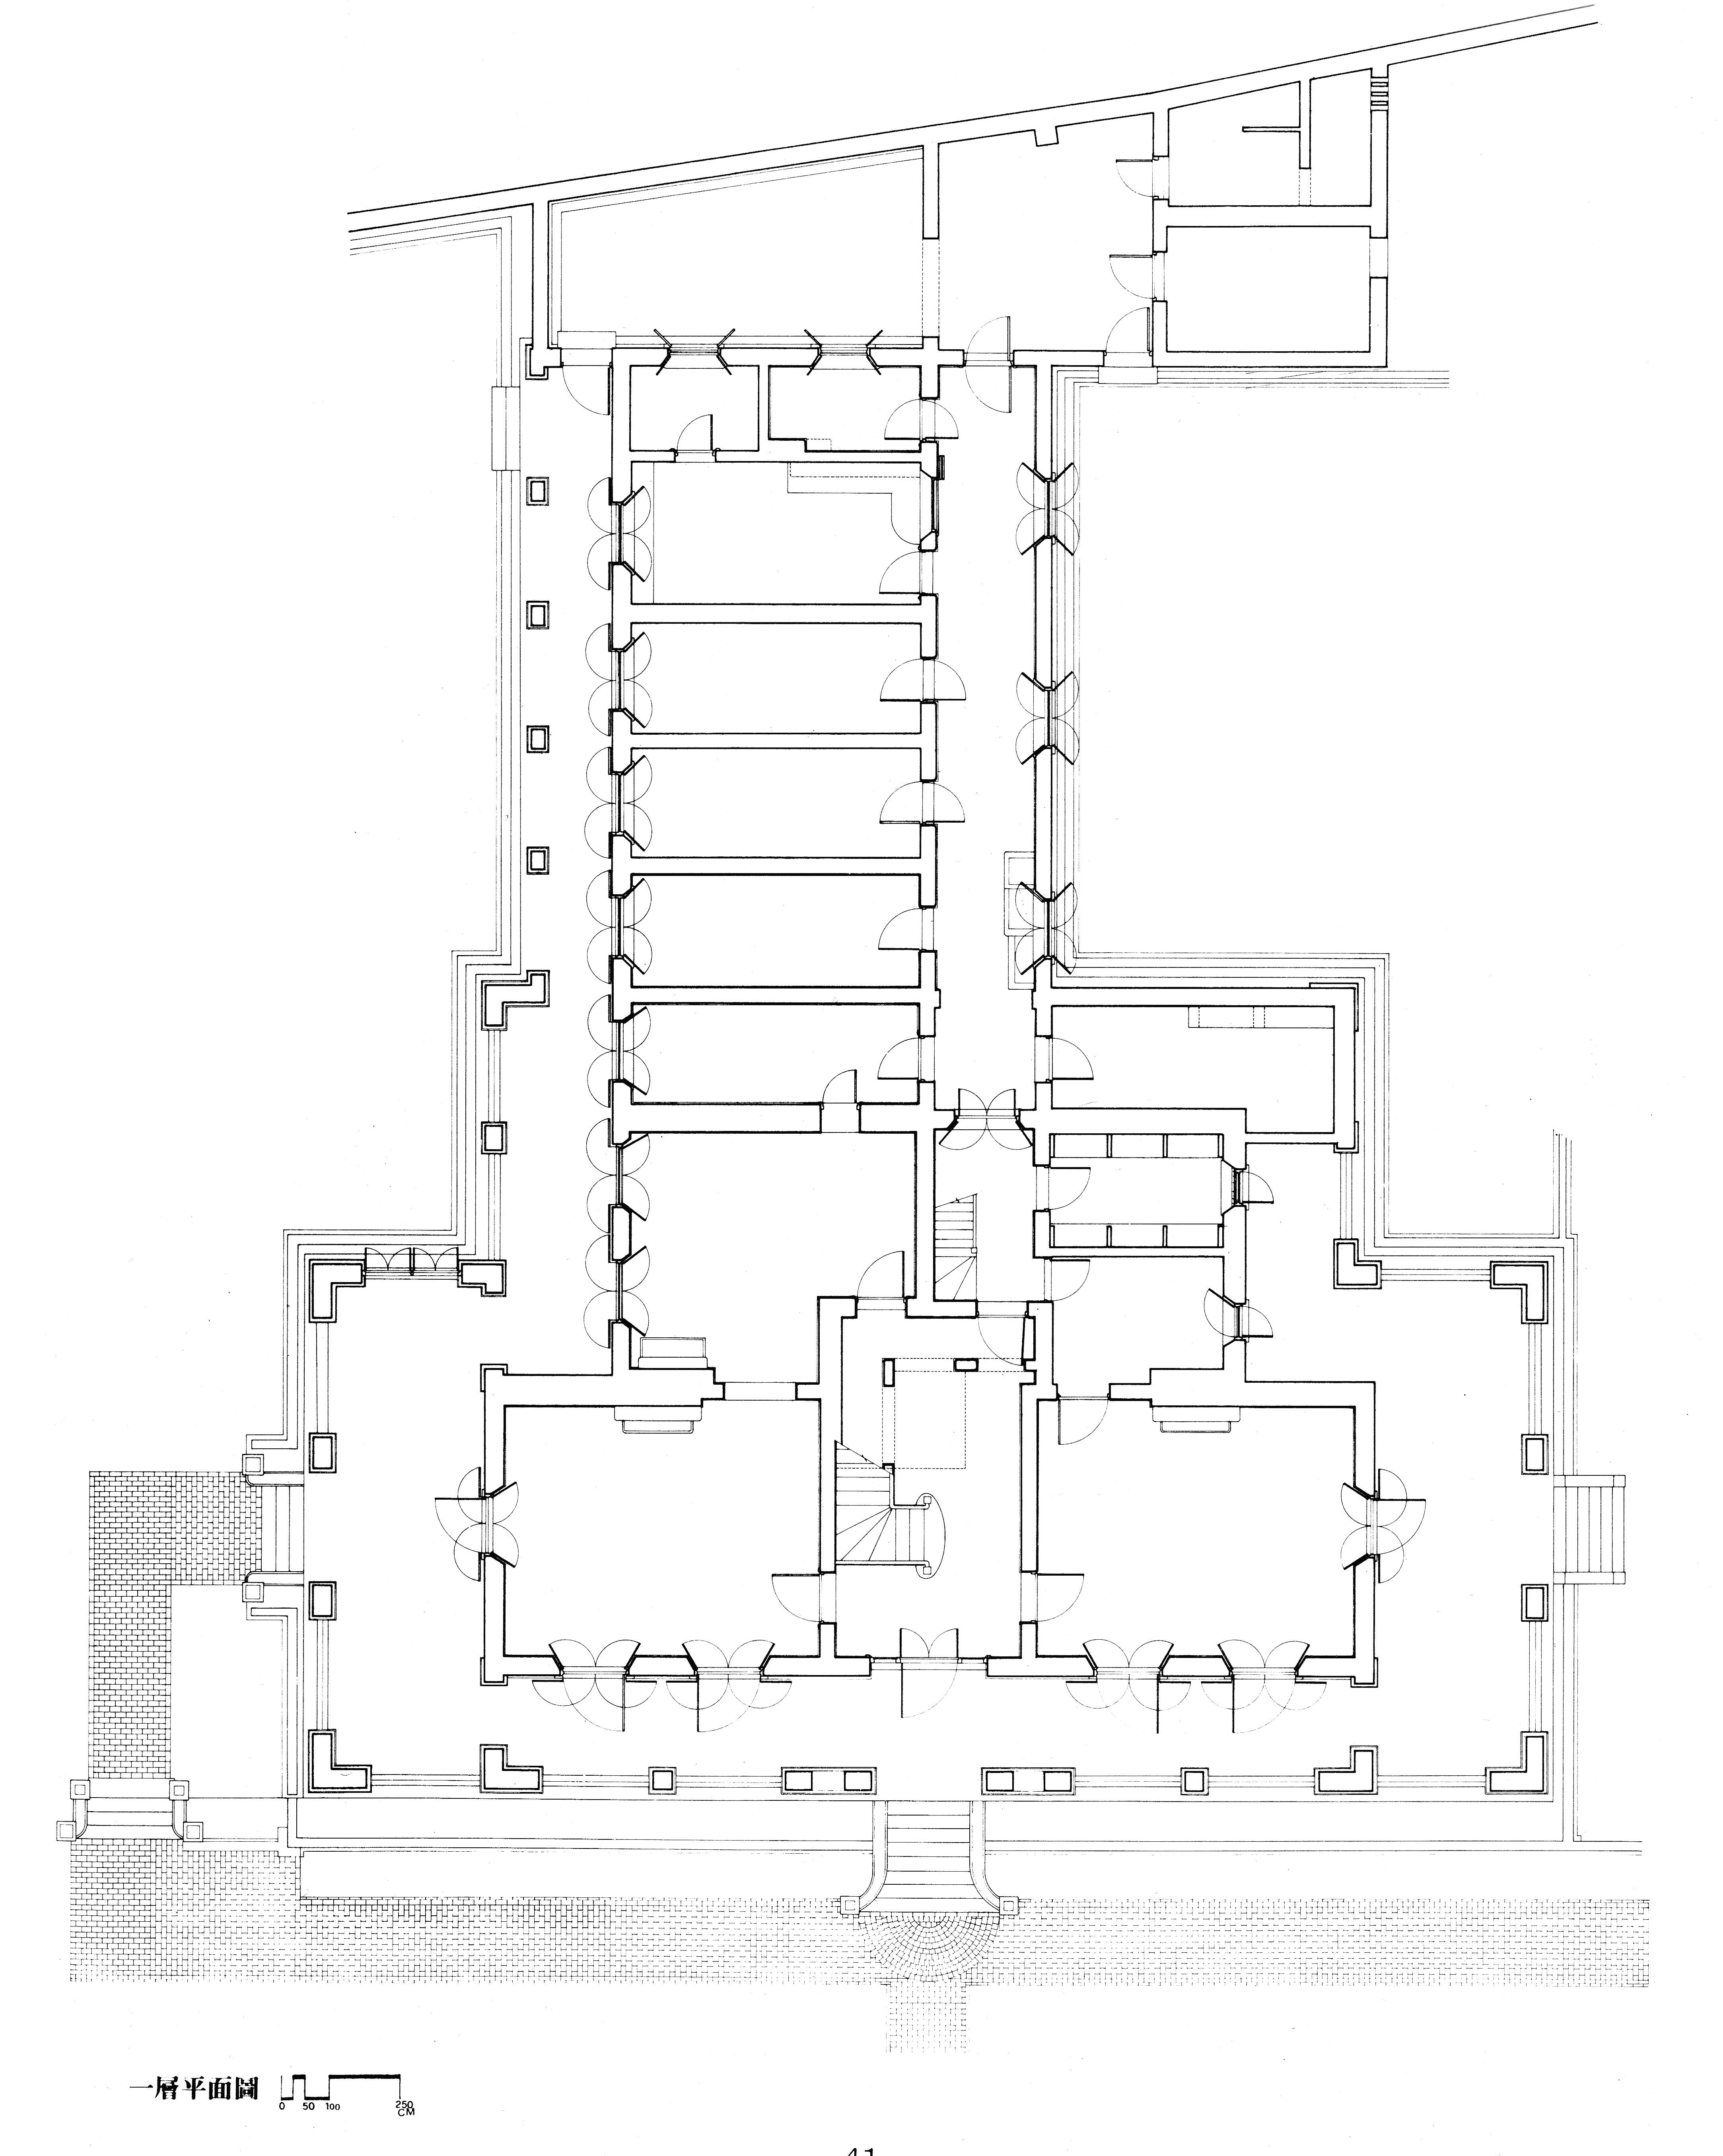 紅毛城圖片檔:英領事住宅一樓平面圖